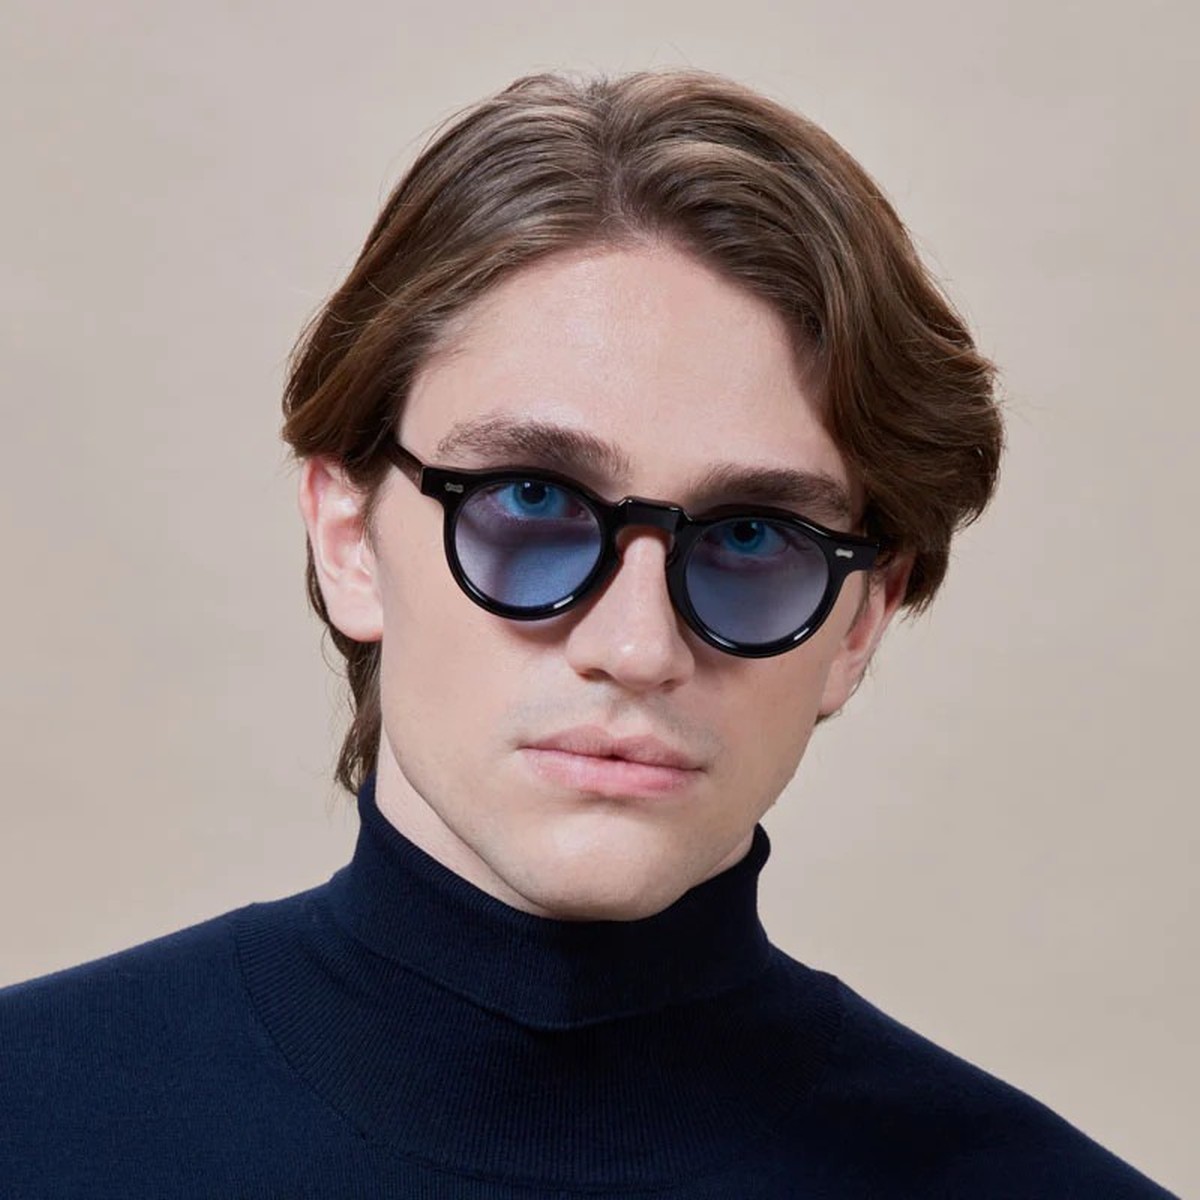 TBD Eyewear Welt saulės akiniai juodais rėmeliais ir mėlynais lęšiais